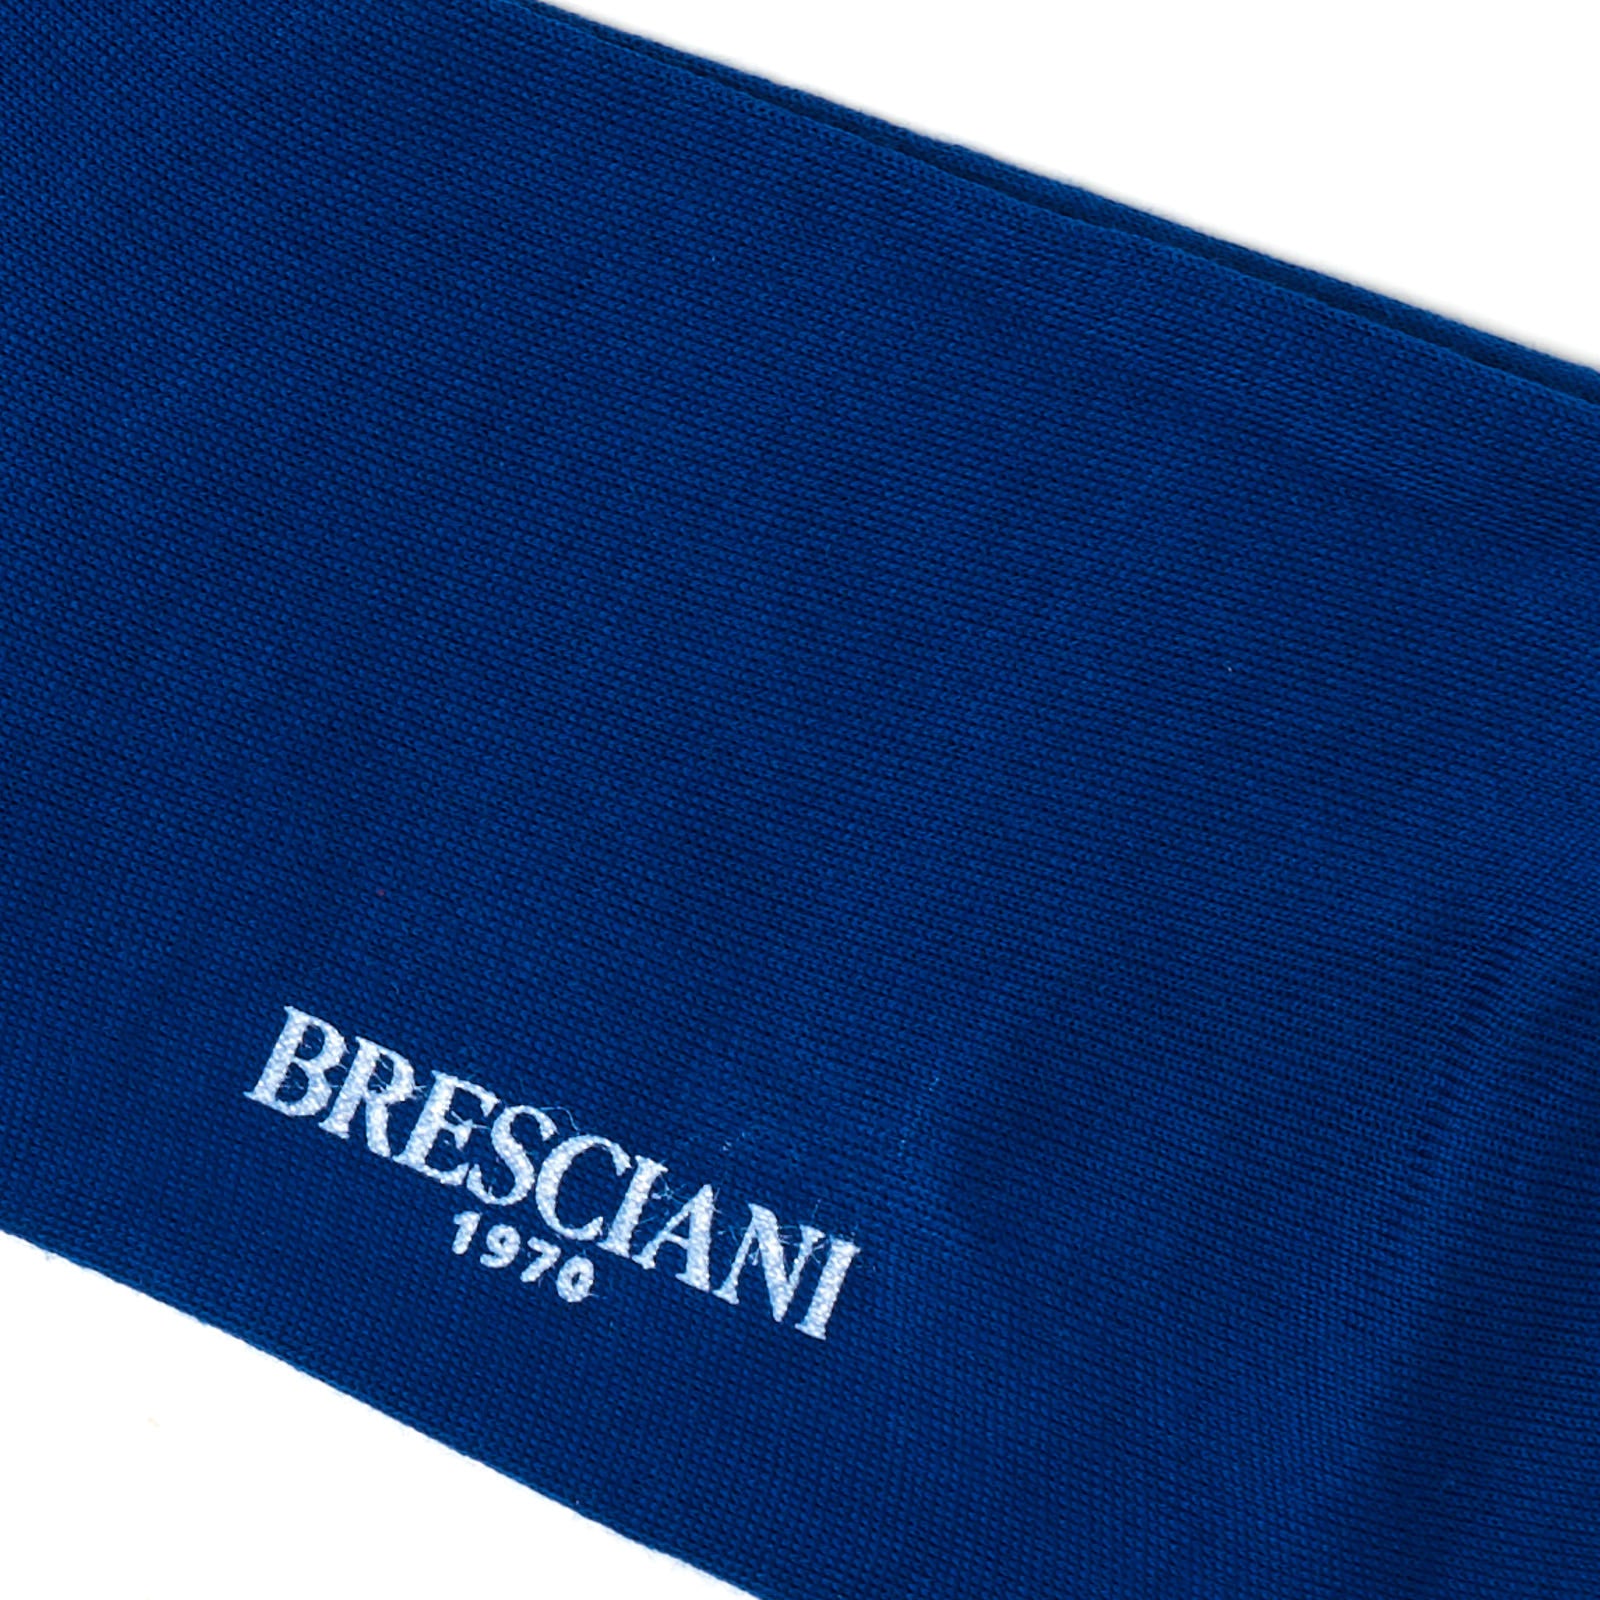 BRESCIANI "Lorenzo" Organic Cotton Mid Calf Length Socks M-L BRESCIANI